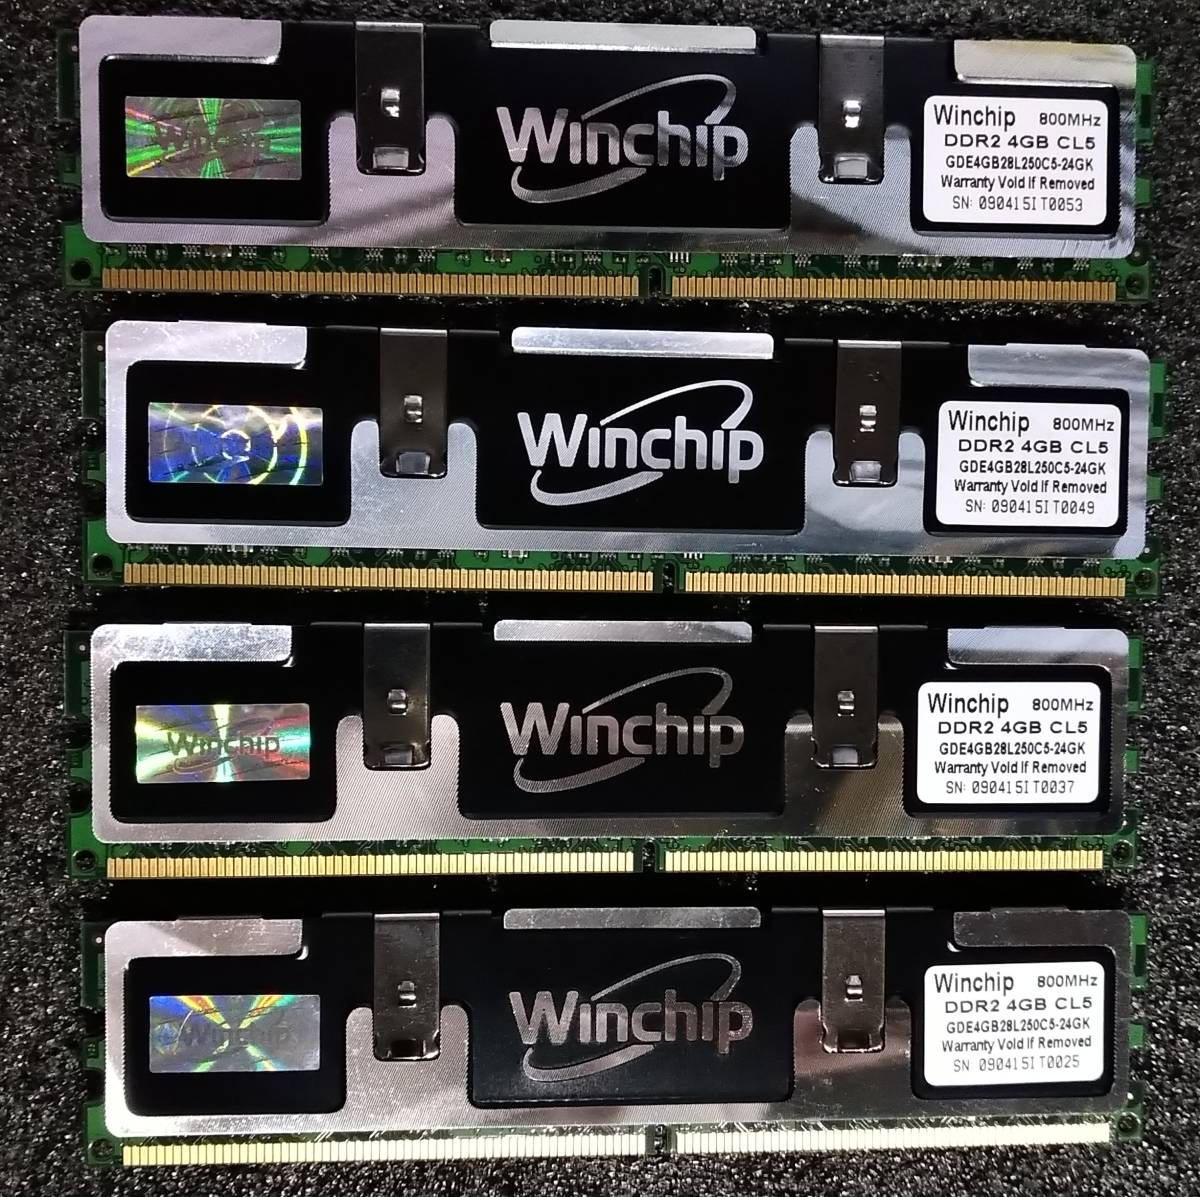 【中古】DDR2メモリ 16GB(4GB4枚組) Whinchip GDE4GB28L250C5-24GK [DDR2-800 PC2-6400]_画像2